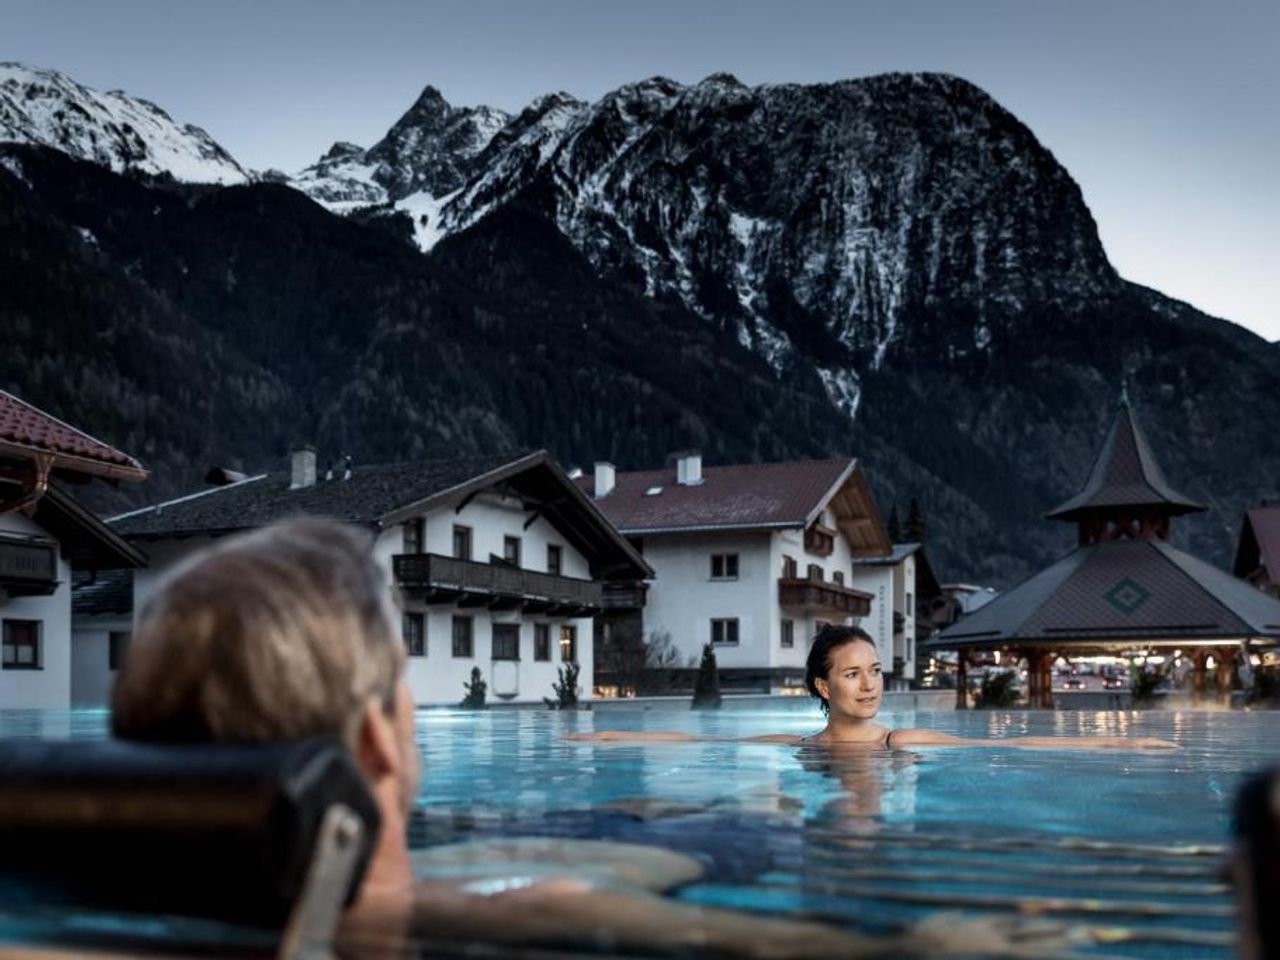 4 Tage Wellness & Genuss in den Tiroler Alpen